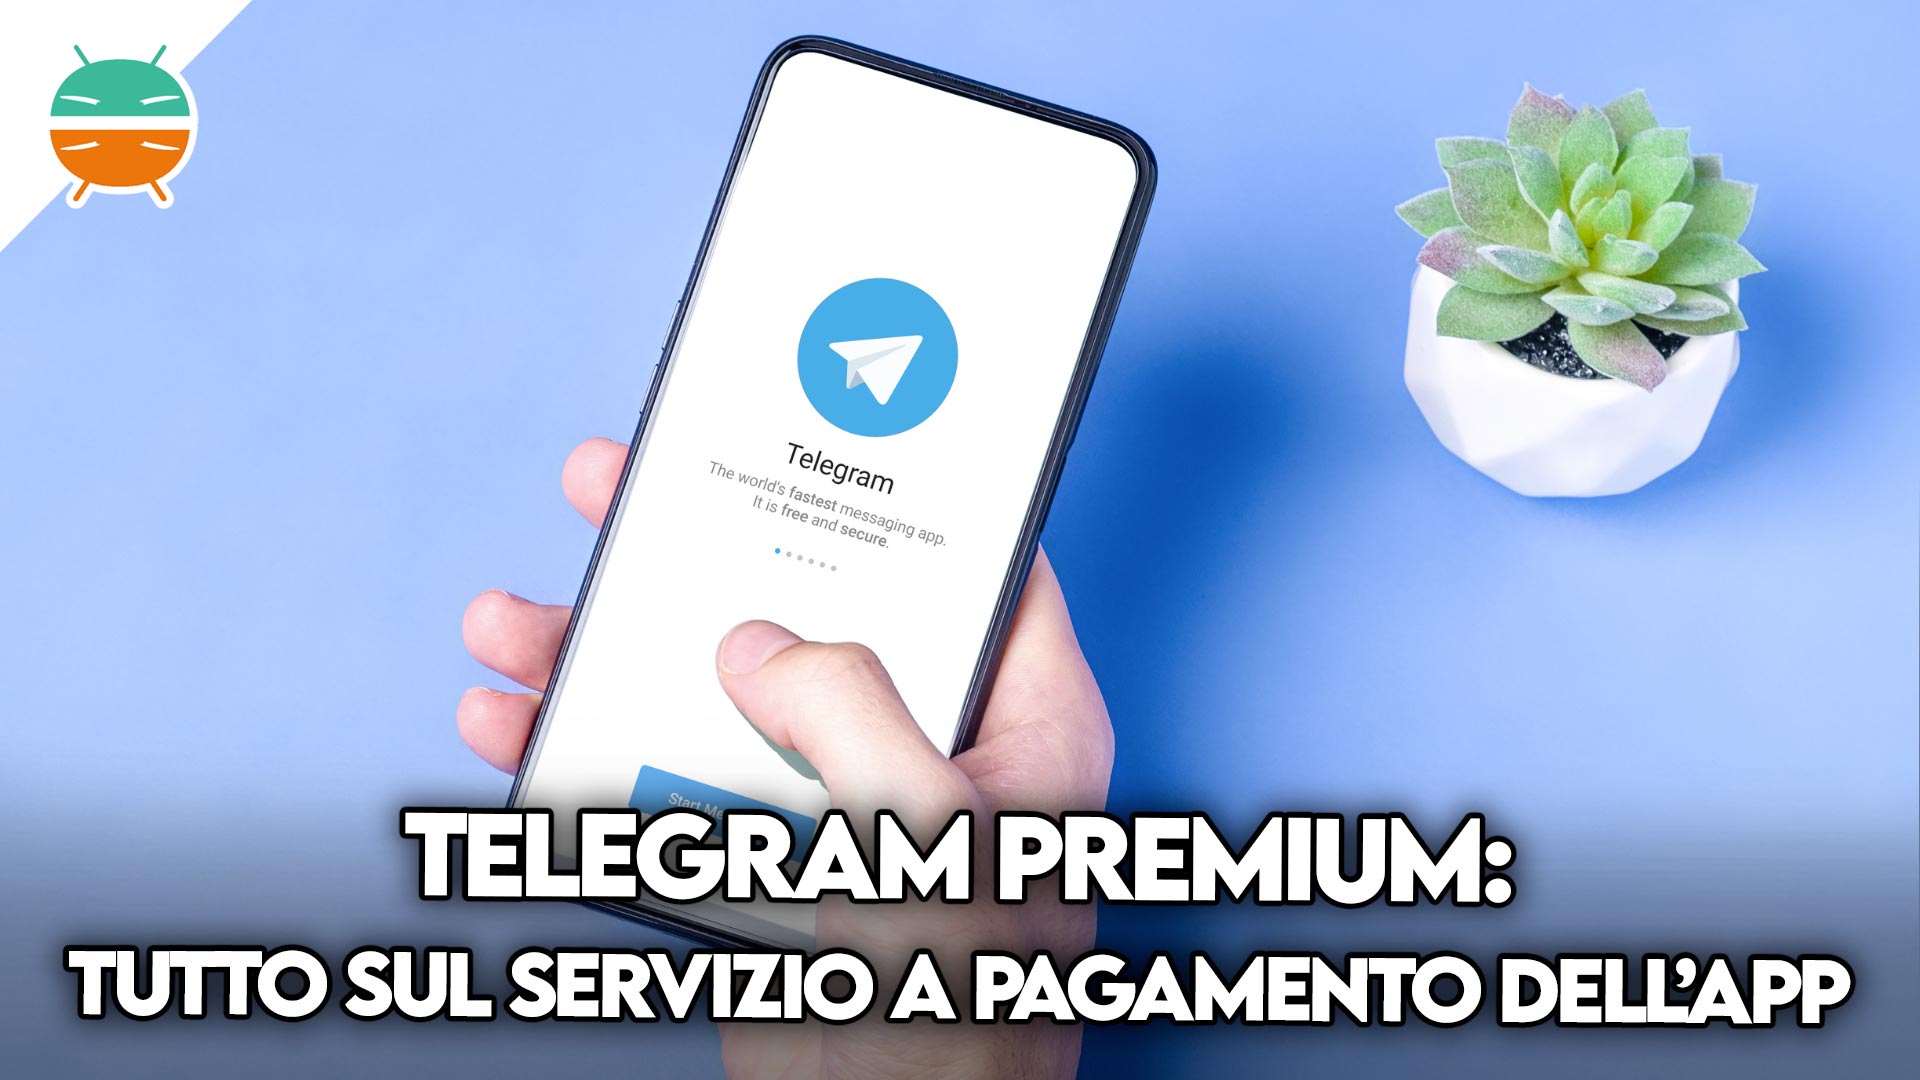 Купить телеграм премиум за тон. Телеграм премиум. Подарок телеграм премиум. Телеграм премиум фото. Telegram Premium возможности.